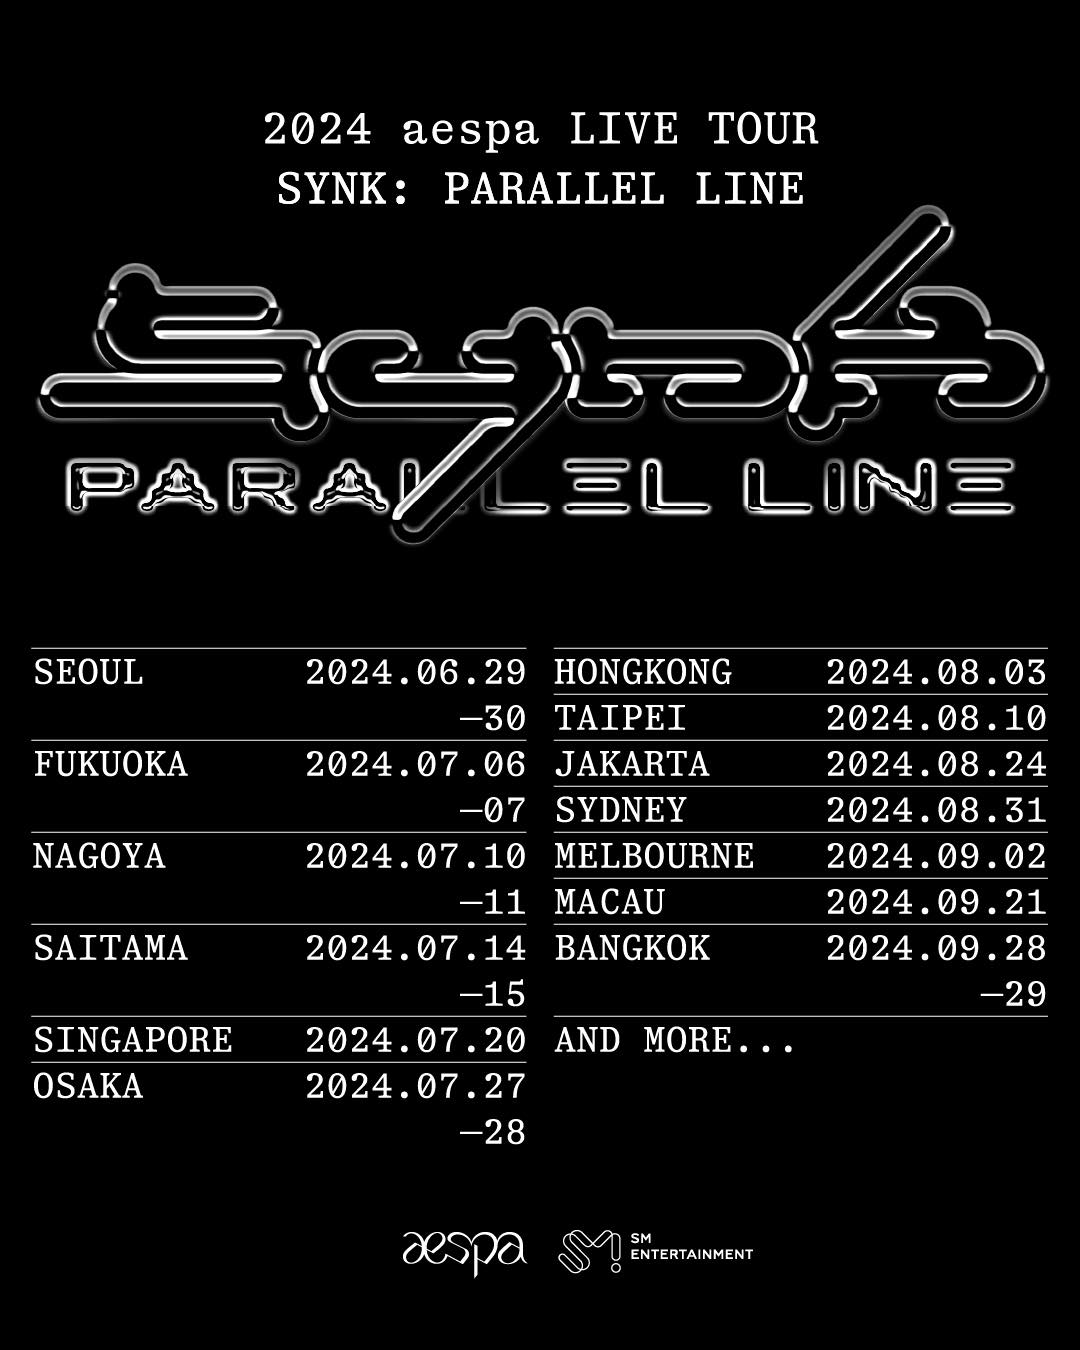 2024 aespa LIVE TOUR - SYNK : Parallel Line - Fukuoka